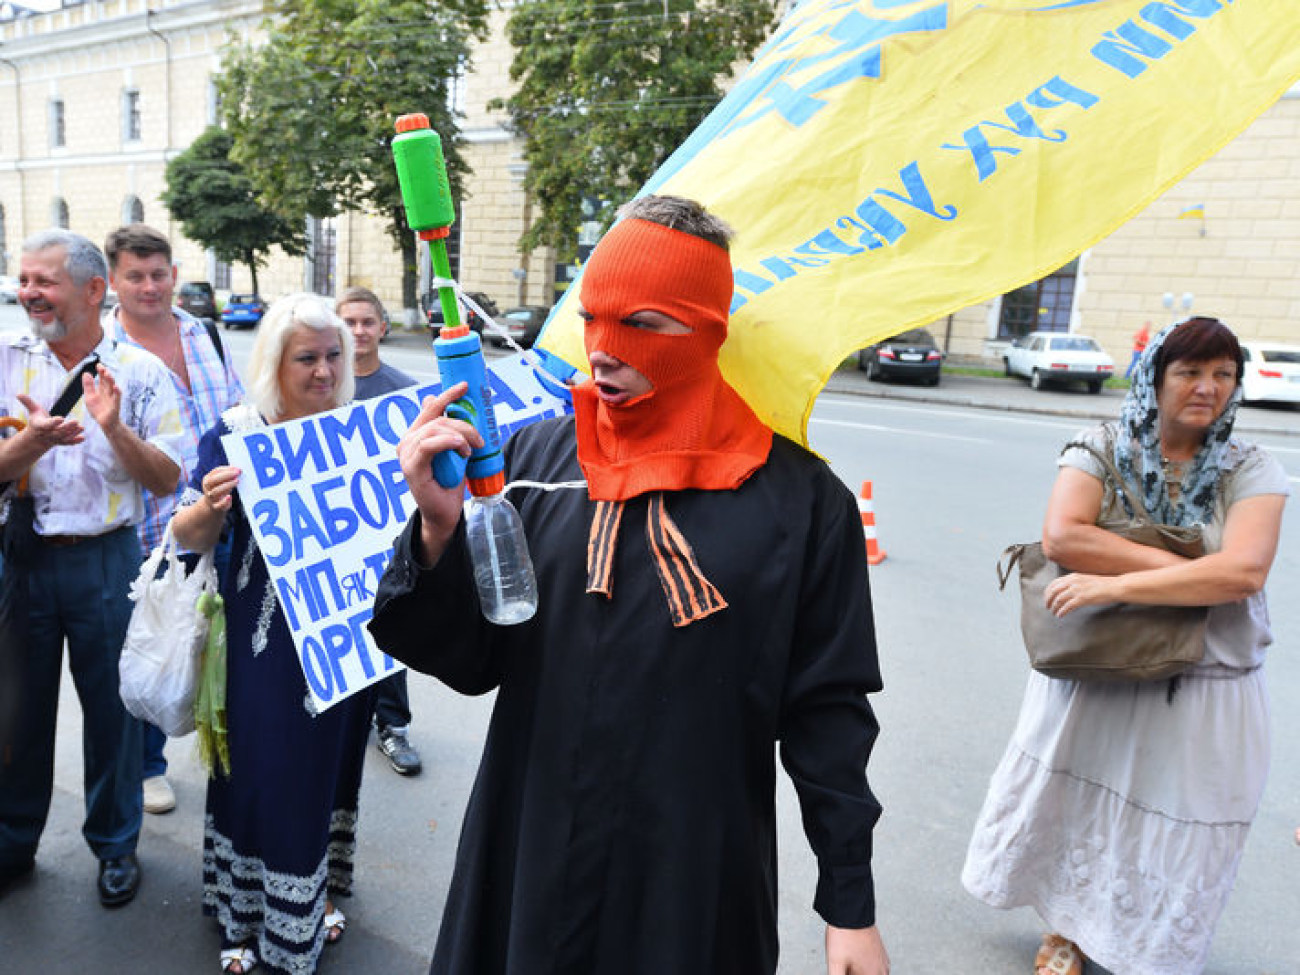 Выборы предстоятеля УПЦ МП сопровождались митингом и милицией, 13 августа 2014г.